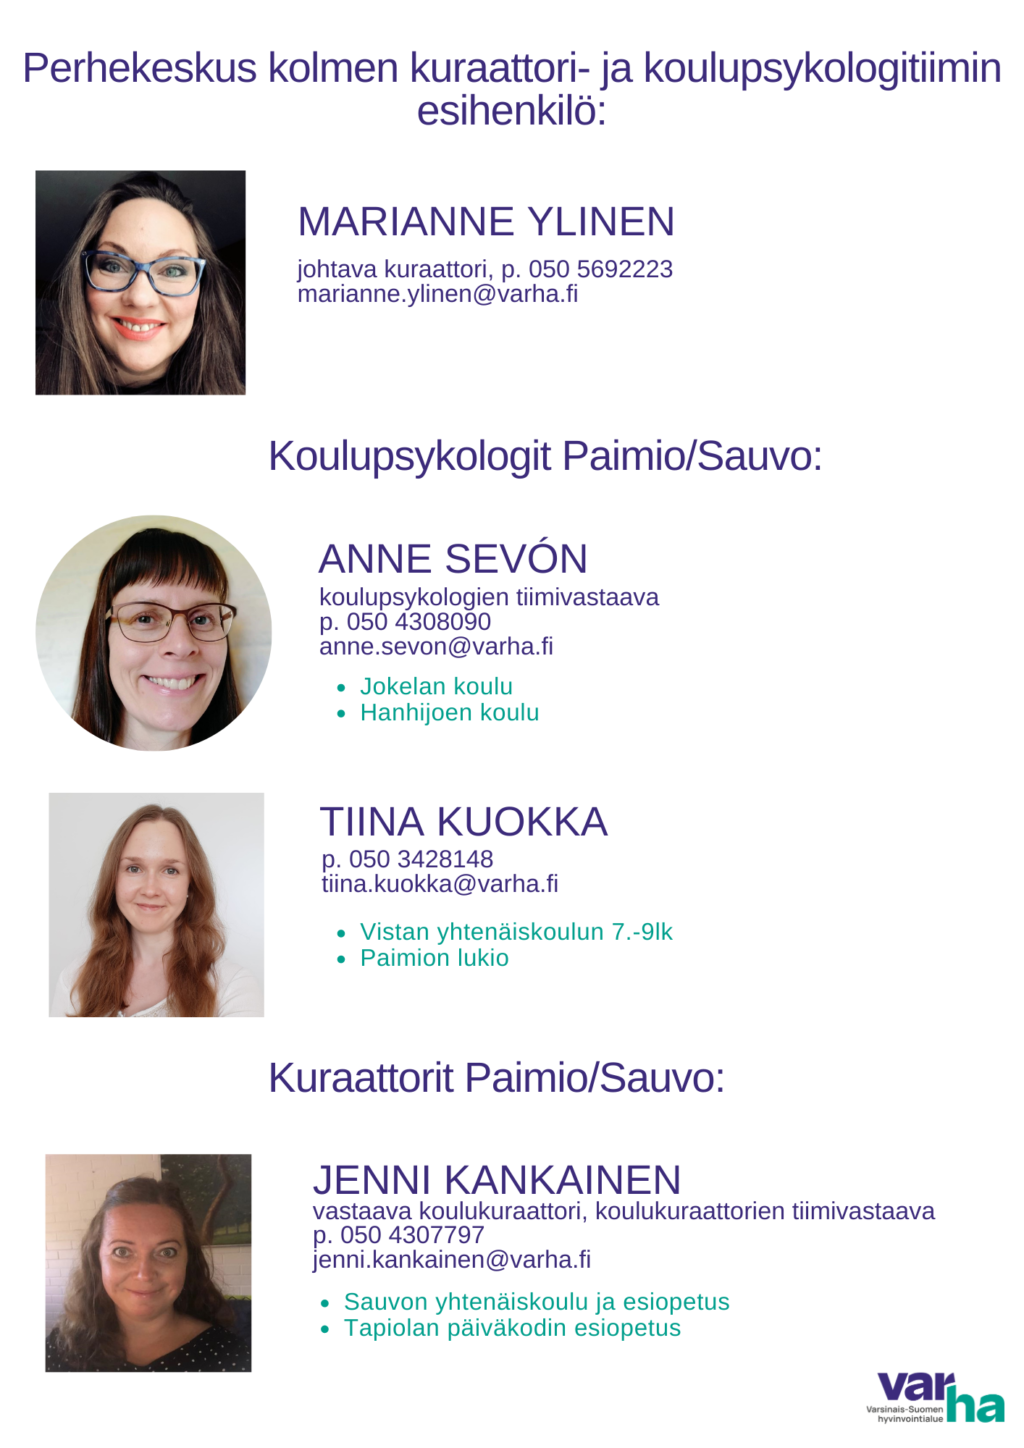 Kuraattori- ja psykologitiimin esihenkilönä toimii Marianne Ylinen. koulupsykologeina Anne Sevón ja Tiina Kuokka sekä kuraattorina Jenni Kankainen.